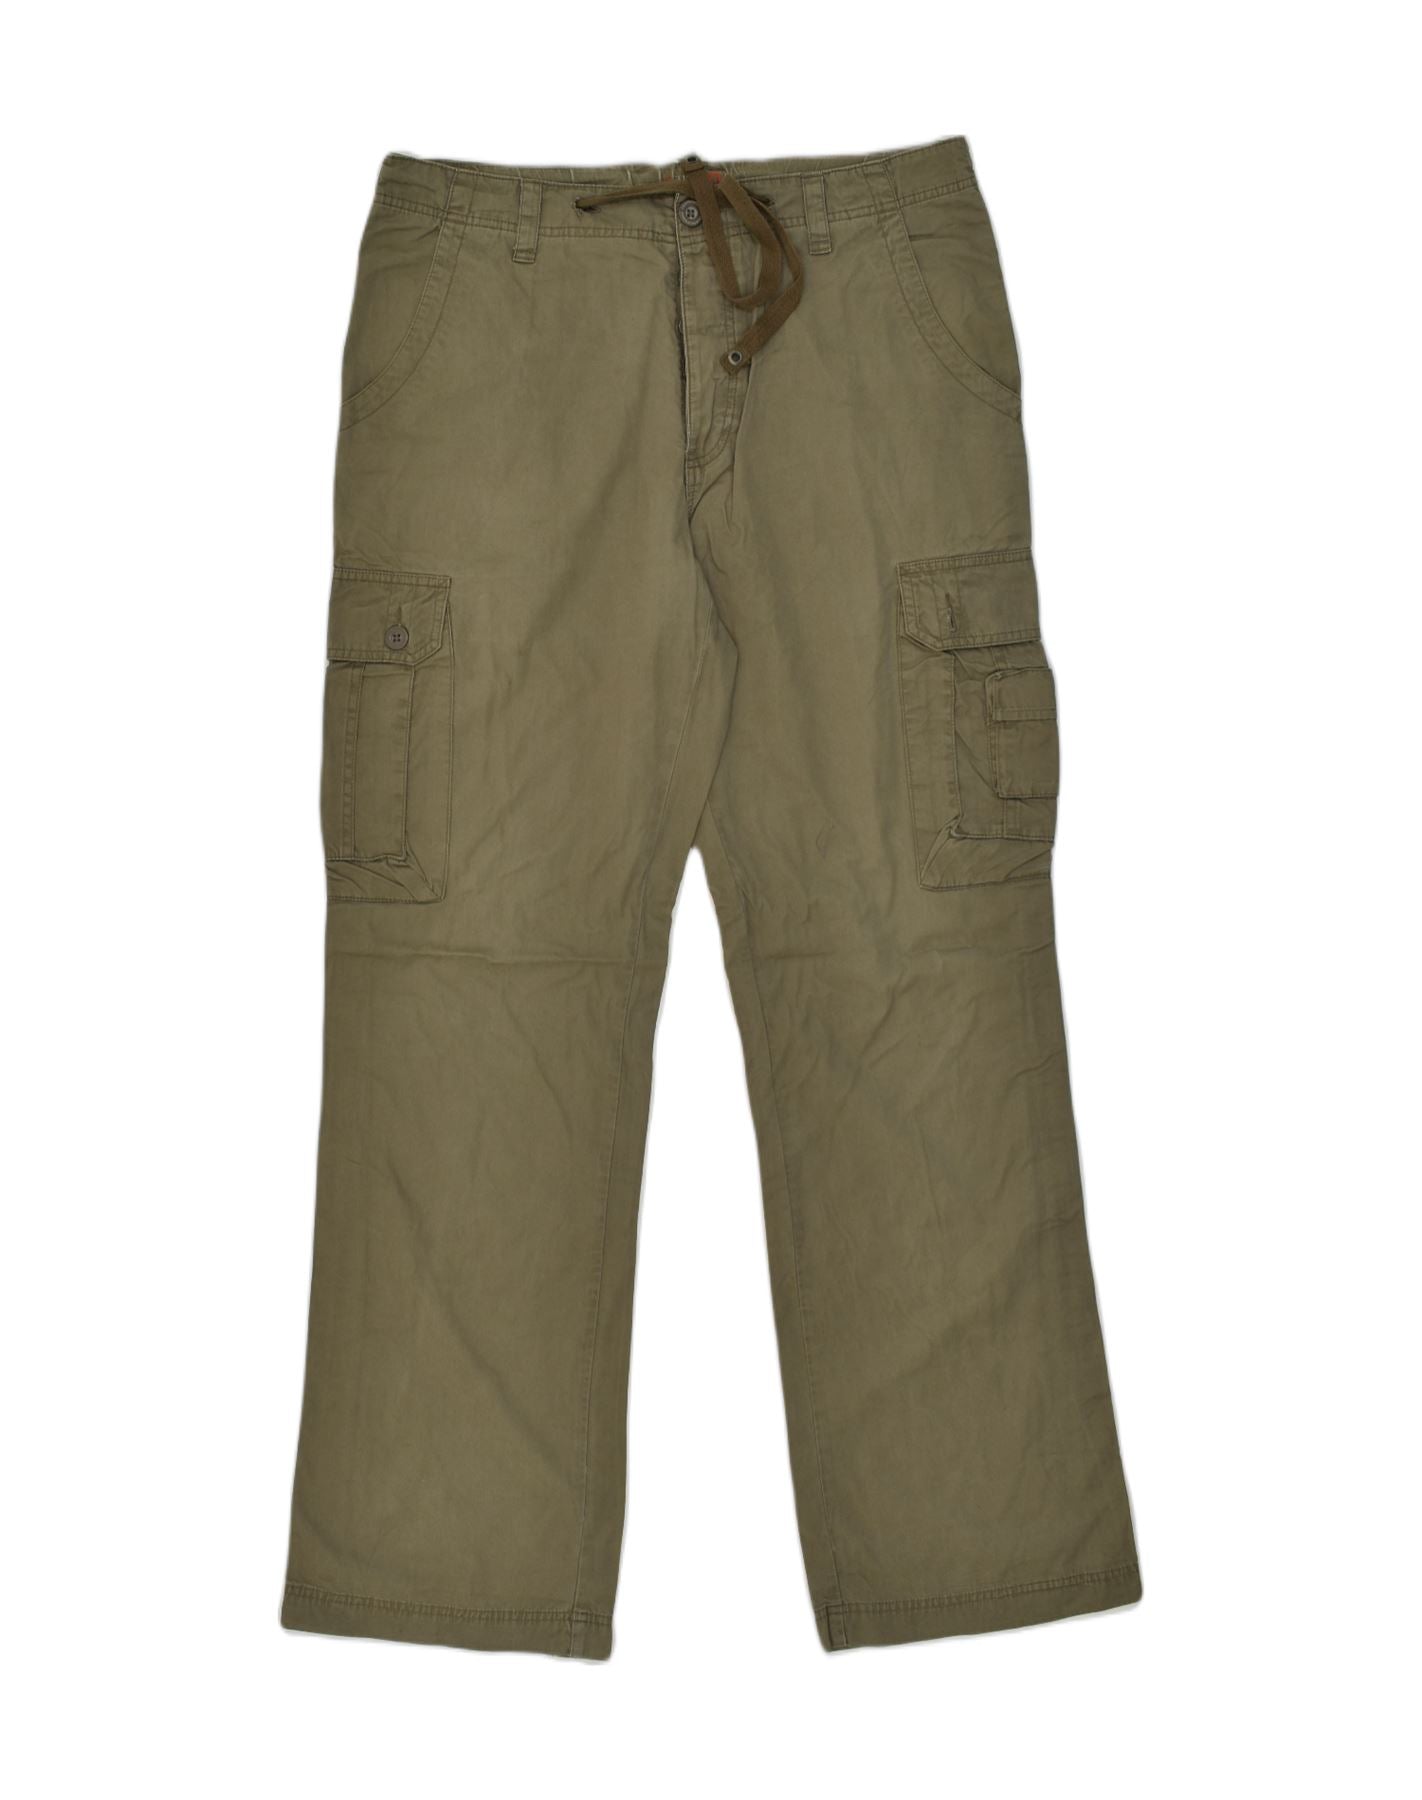 Indicode Men's 98% Cotton Cantu Drawstring Cargo Pants – INDICODE